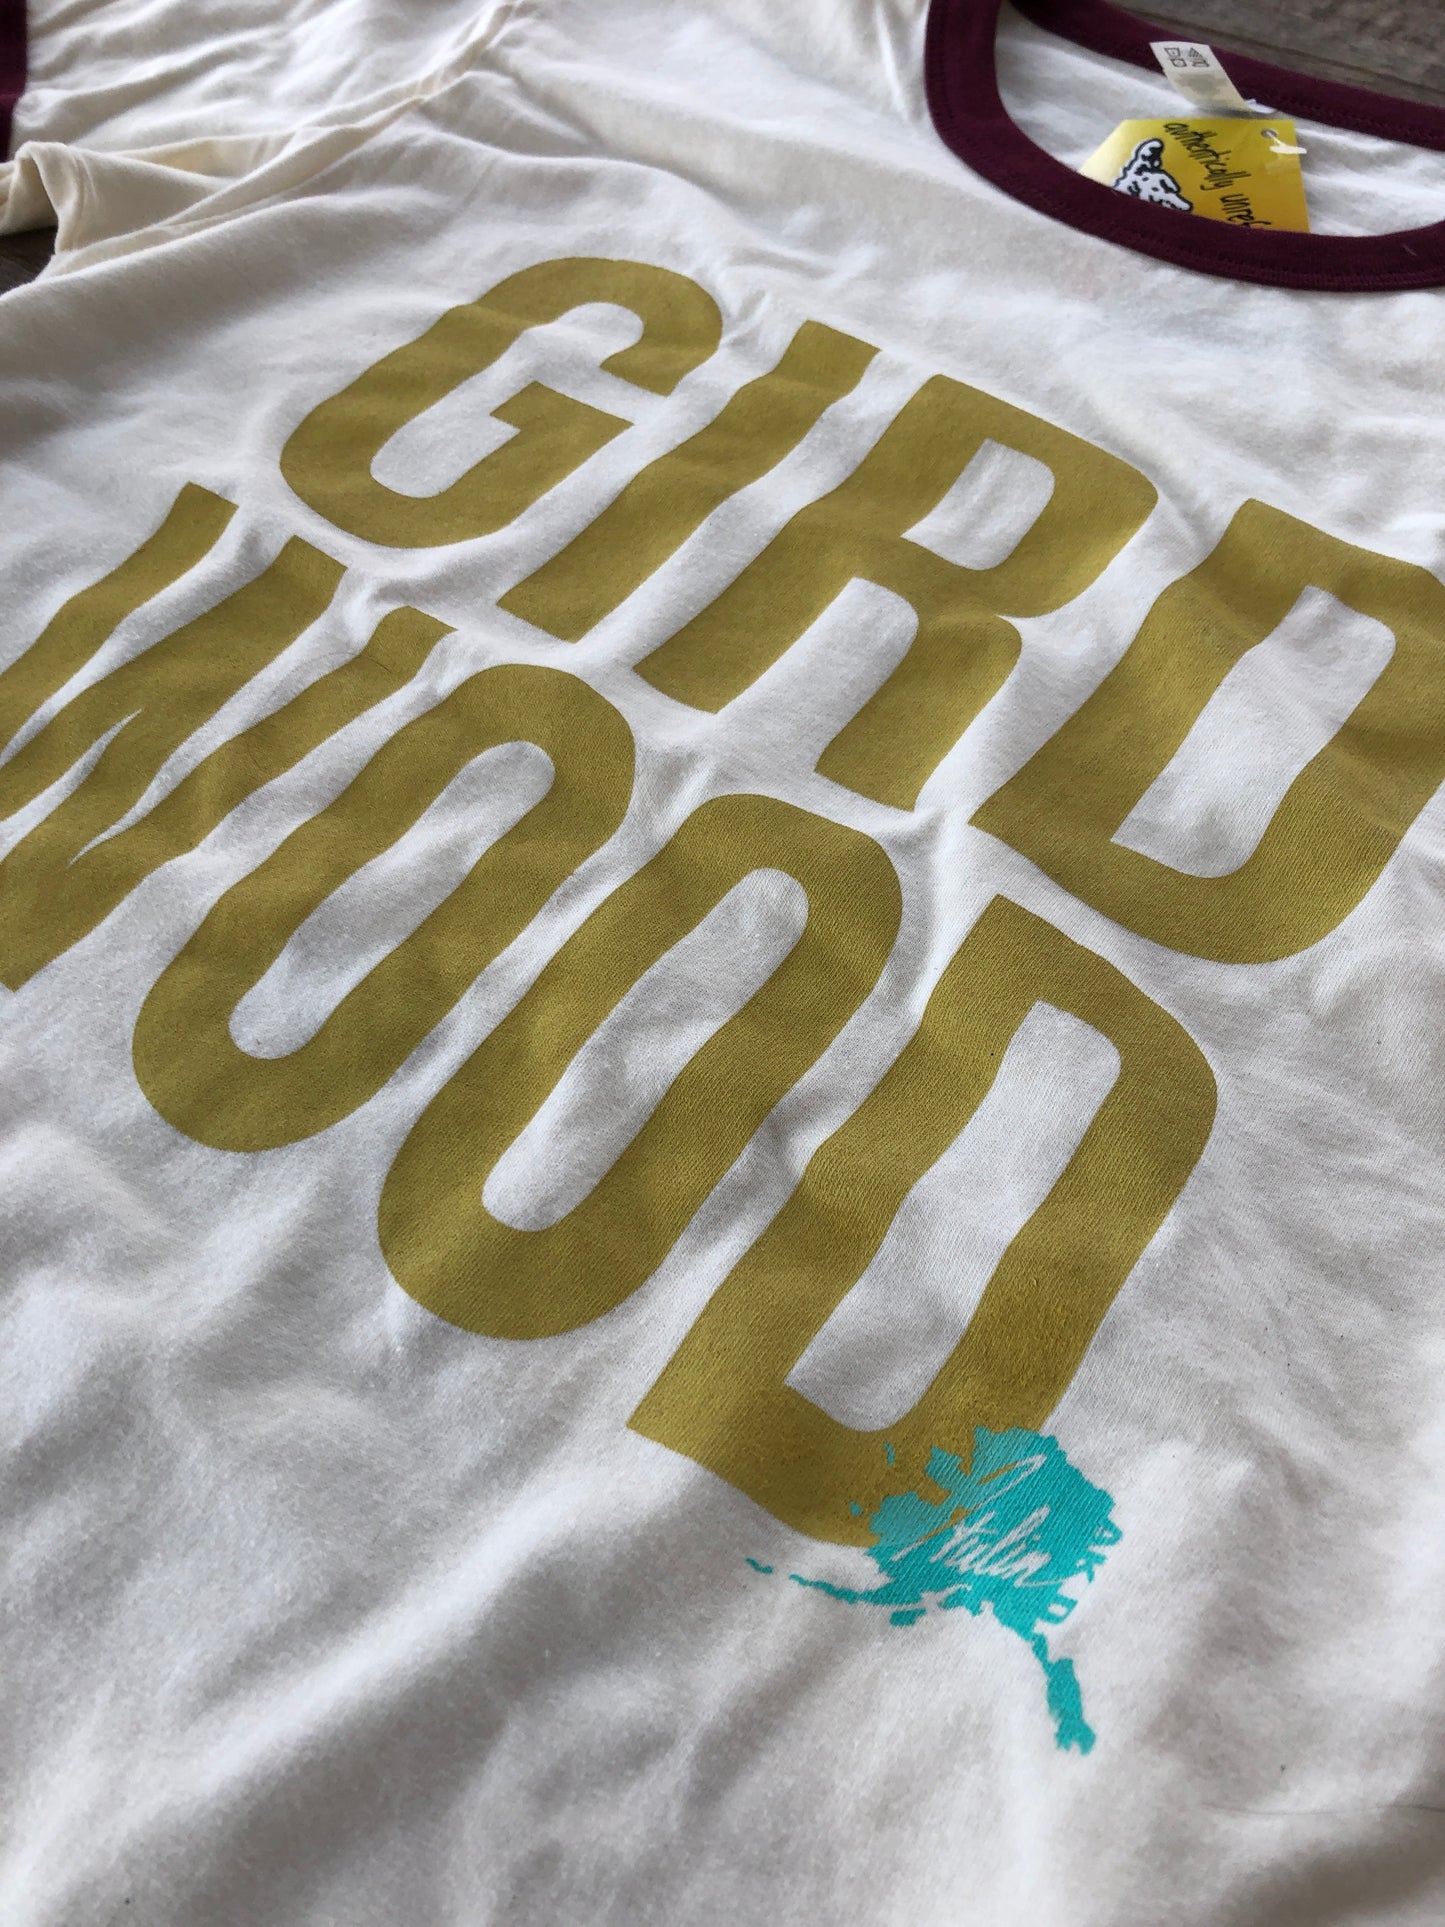 Girdwood T-Shirt